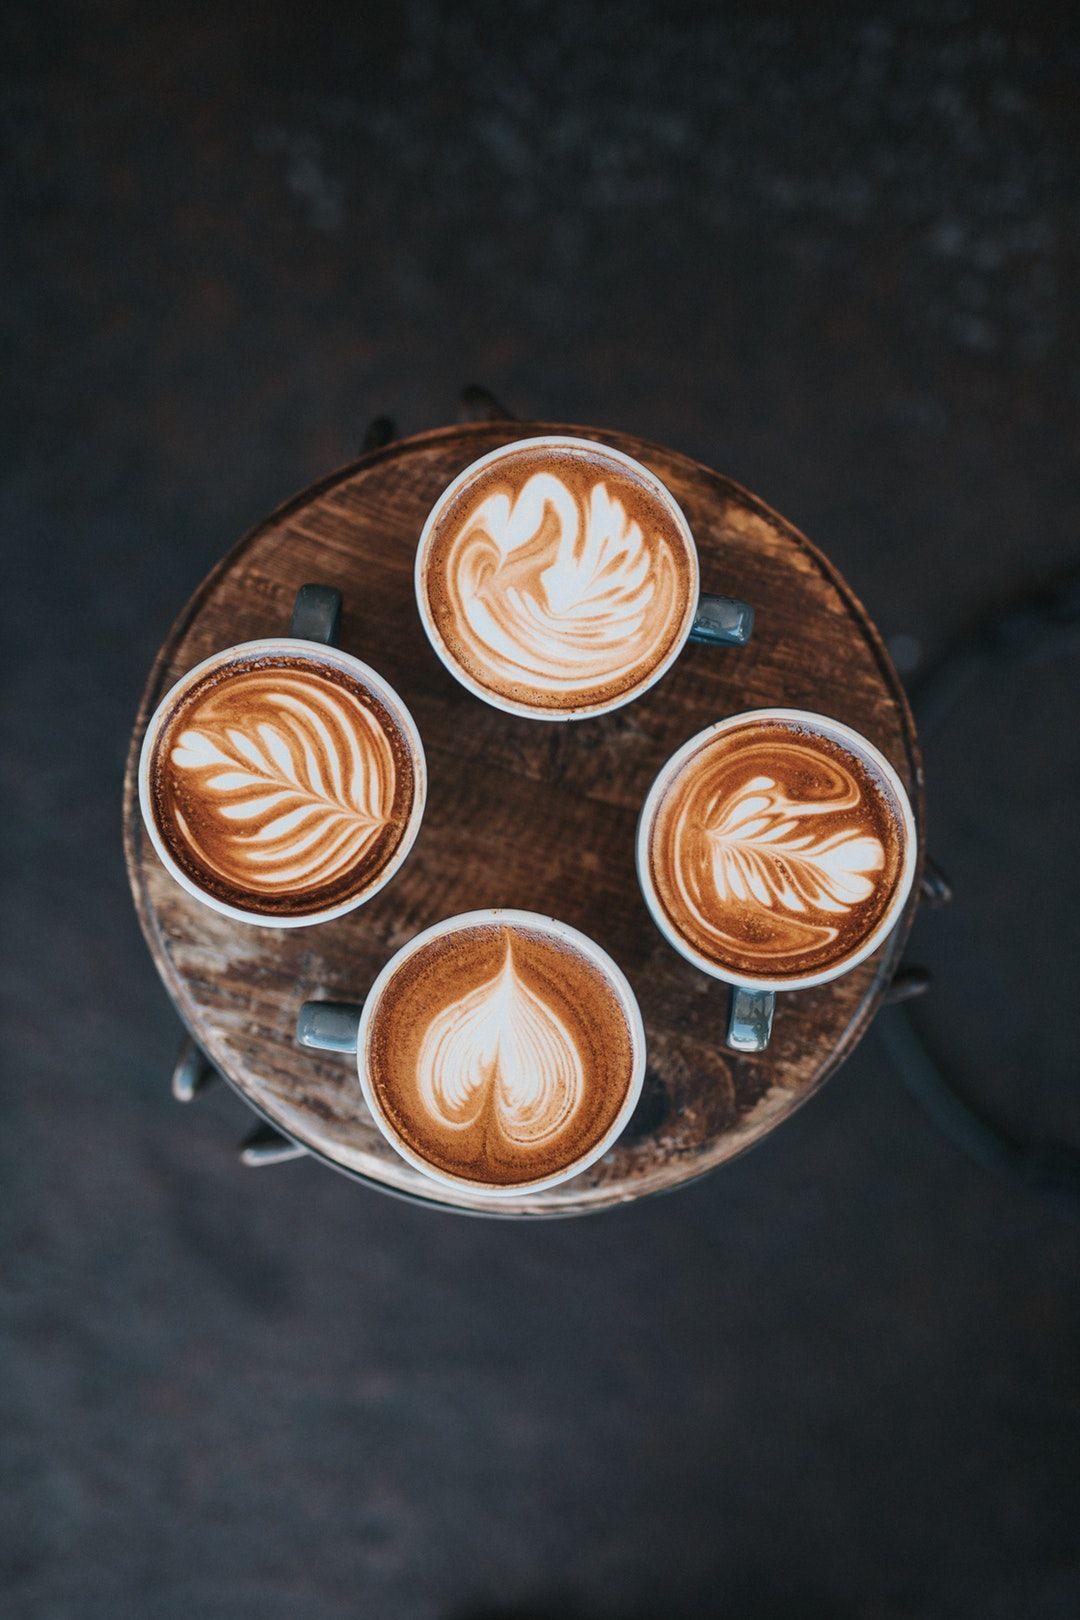 Néhány hasznos tipp a Latte art-hoz